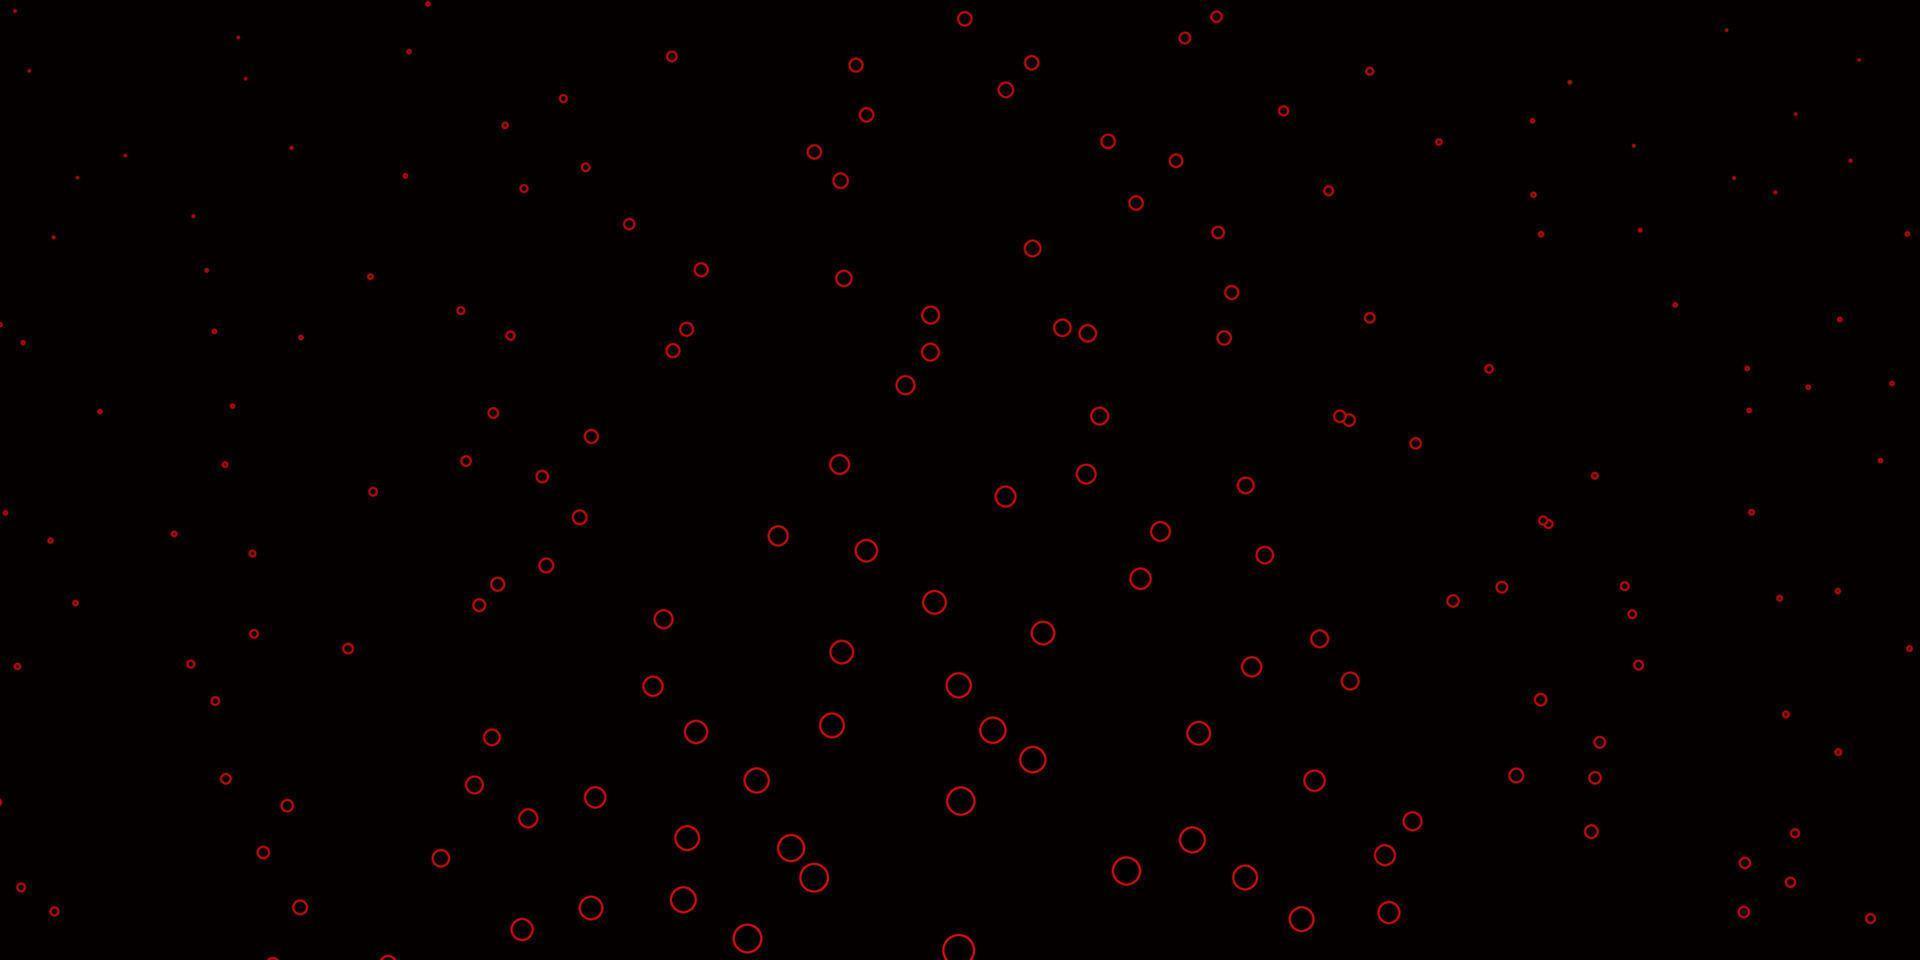 padrão de vetor vermelho escuro com esferas.